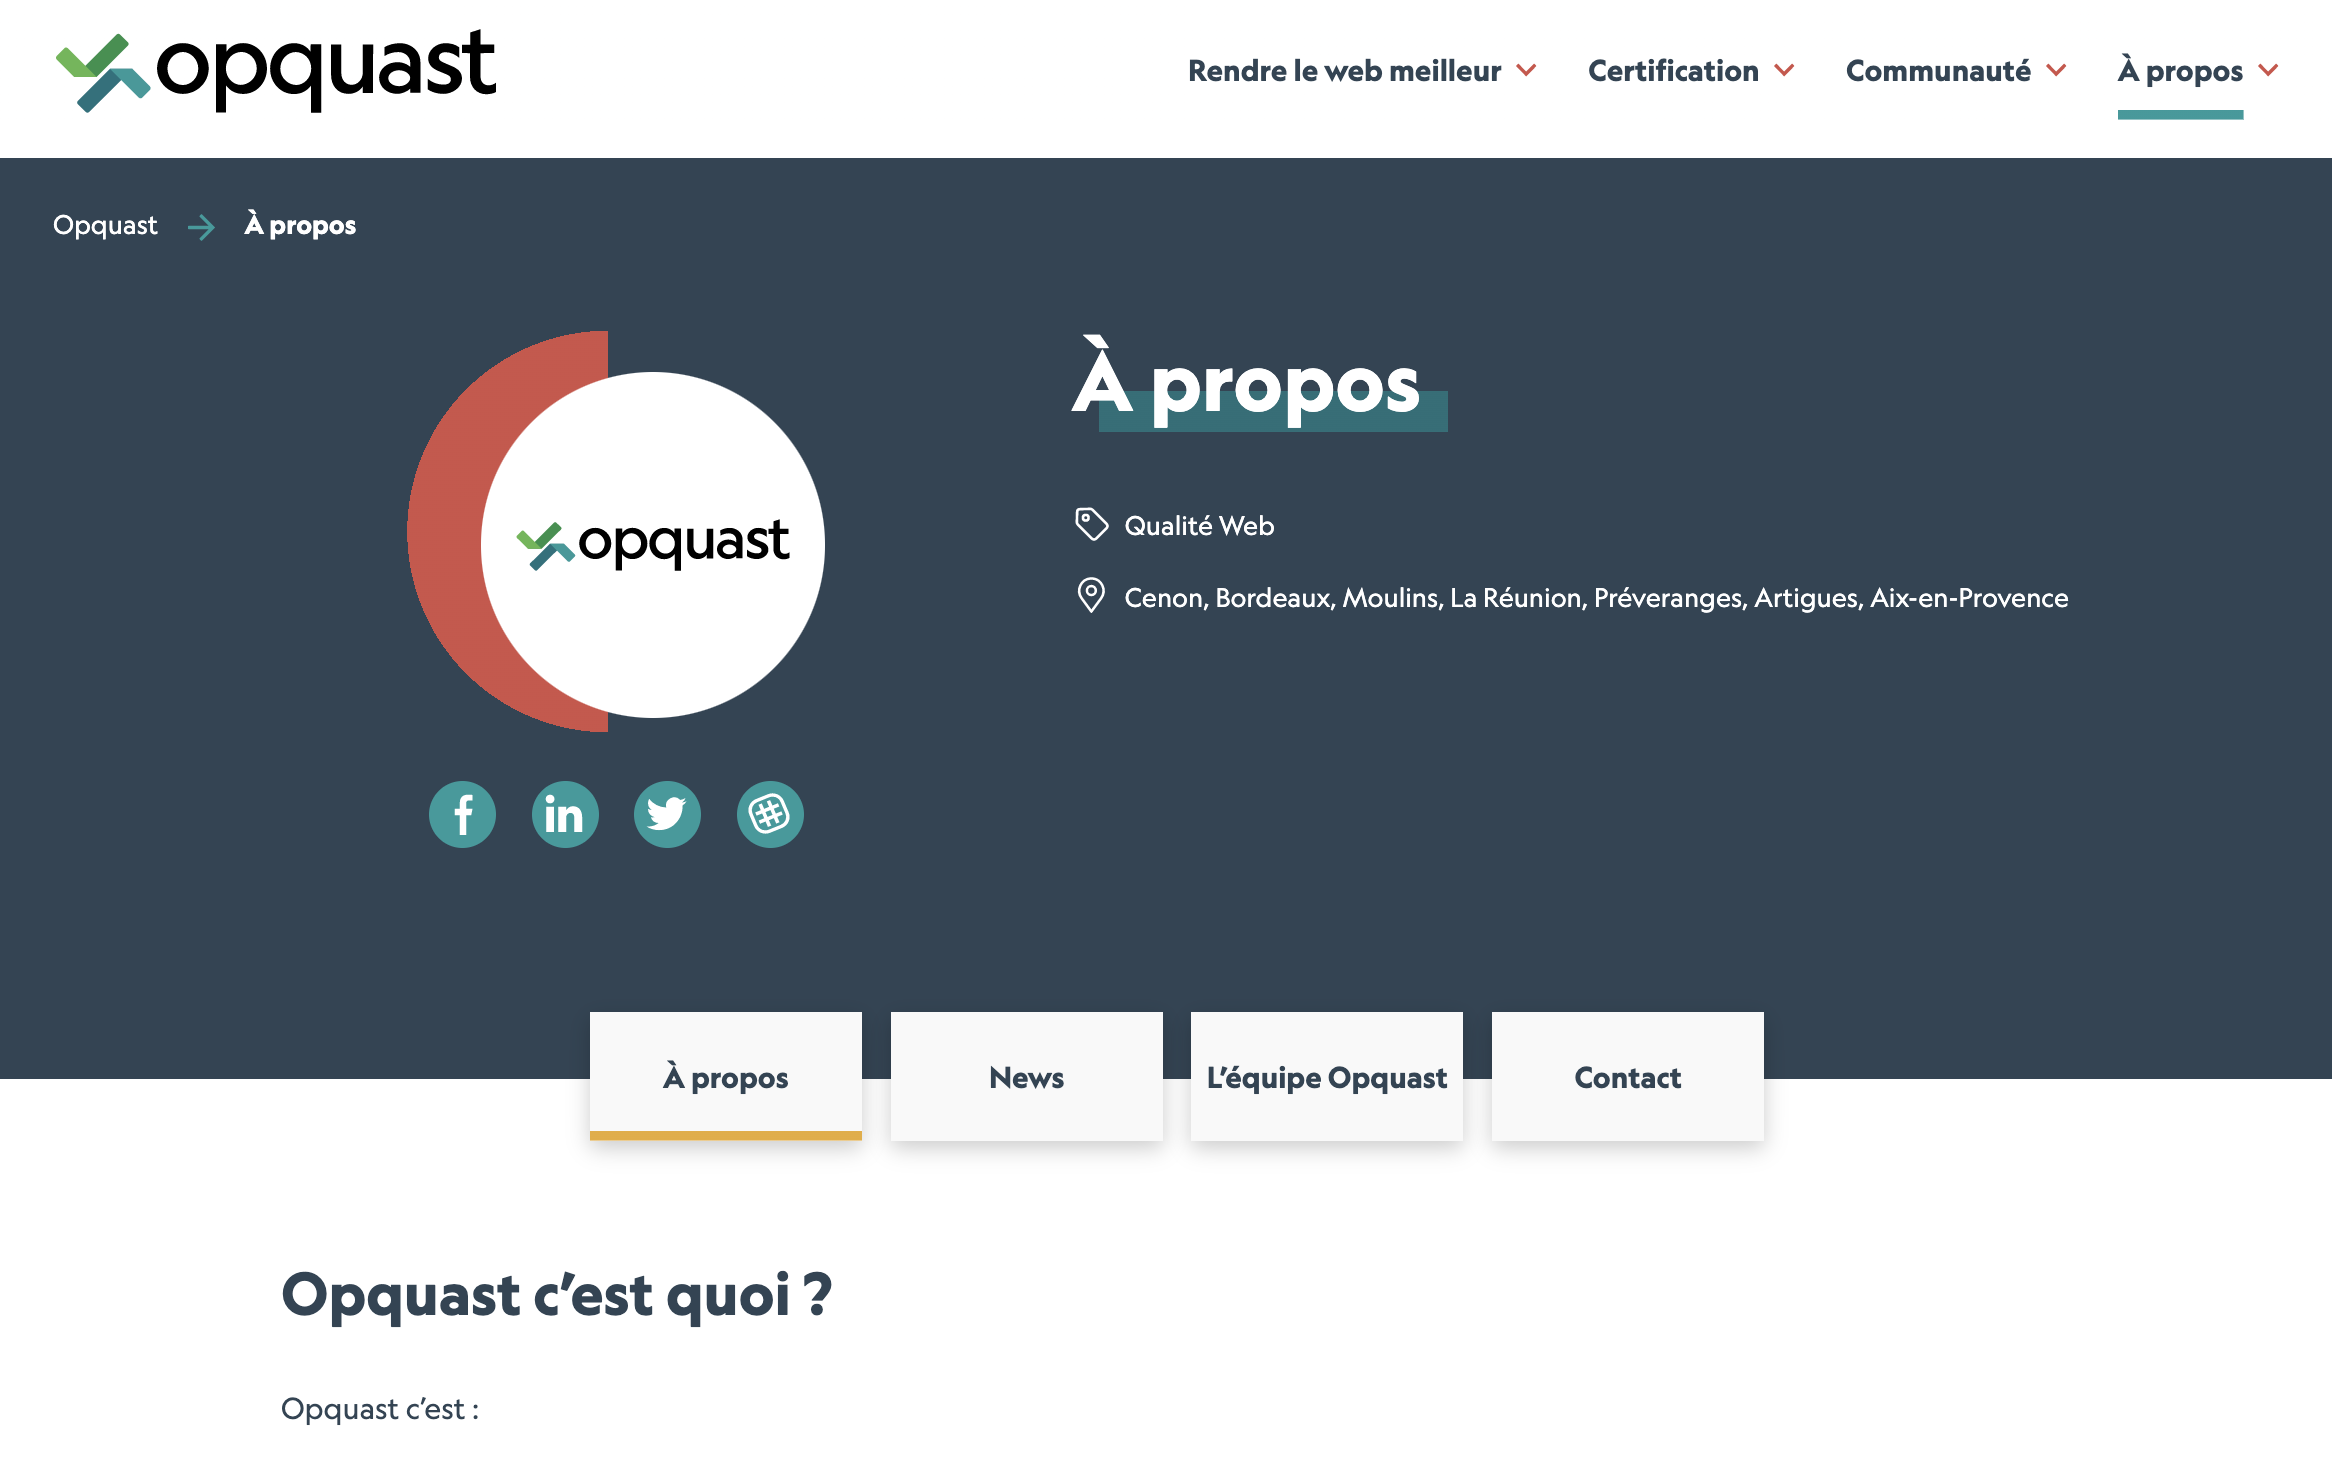 Sur le site opquast.com, l’audit des pages de rubrique nécessite deux pages d’échantillon, pour refléter les deux structures de contenu différentes selon la rubrique